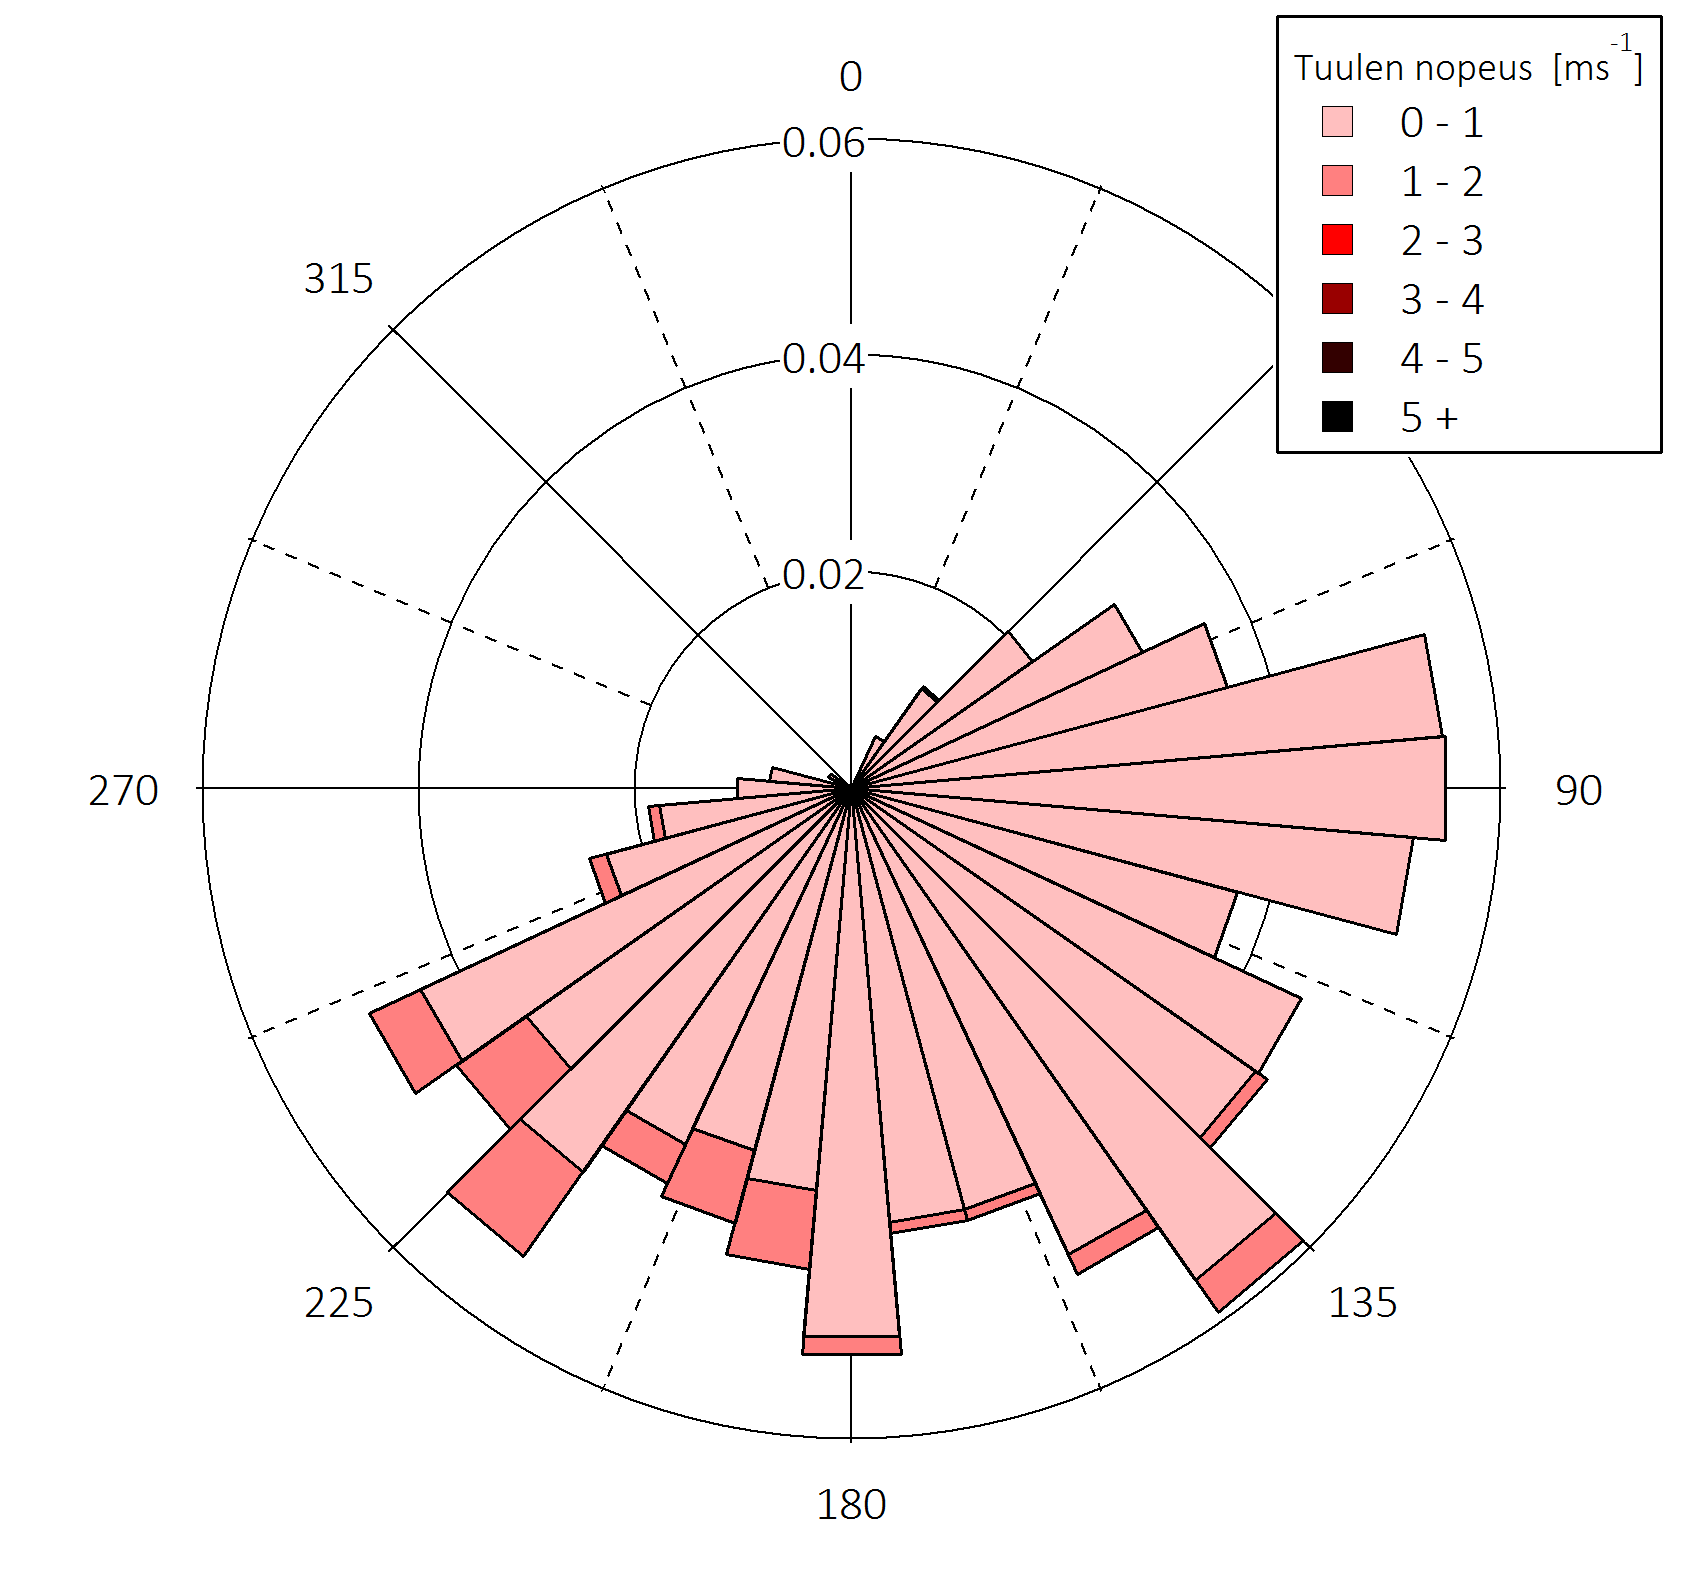 (c) Kesä (d) Syksy Kuva 4.2: Tuuliruusut termisille vuodenajoille, 2014. Tuulensuunnat on jaettu 10 asteen koreihin. Värikoodi kuvaa tuulen nopeutta yksikössä ms 1.